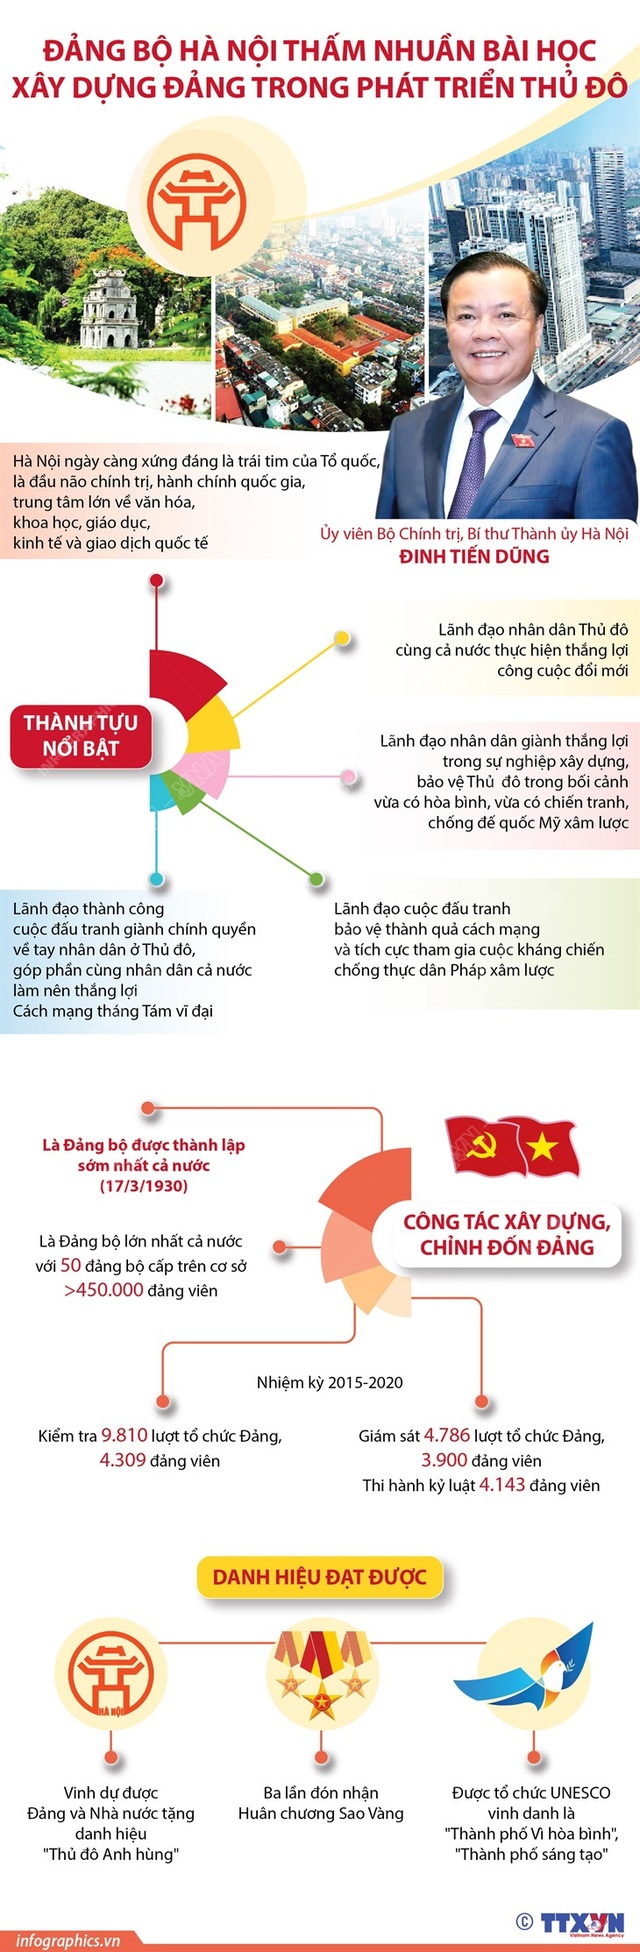 Đảng bộ Hà Nội thấm nhuần bài học xây dựng Đảng trong phát triển Thủ đô - Ảnh 1.